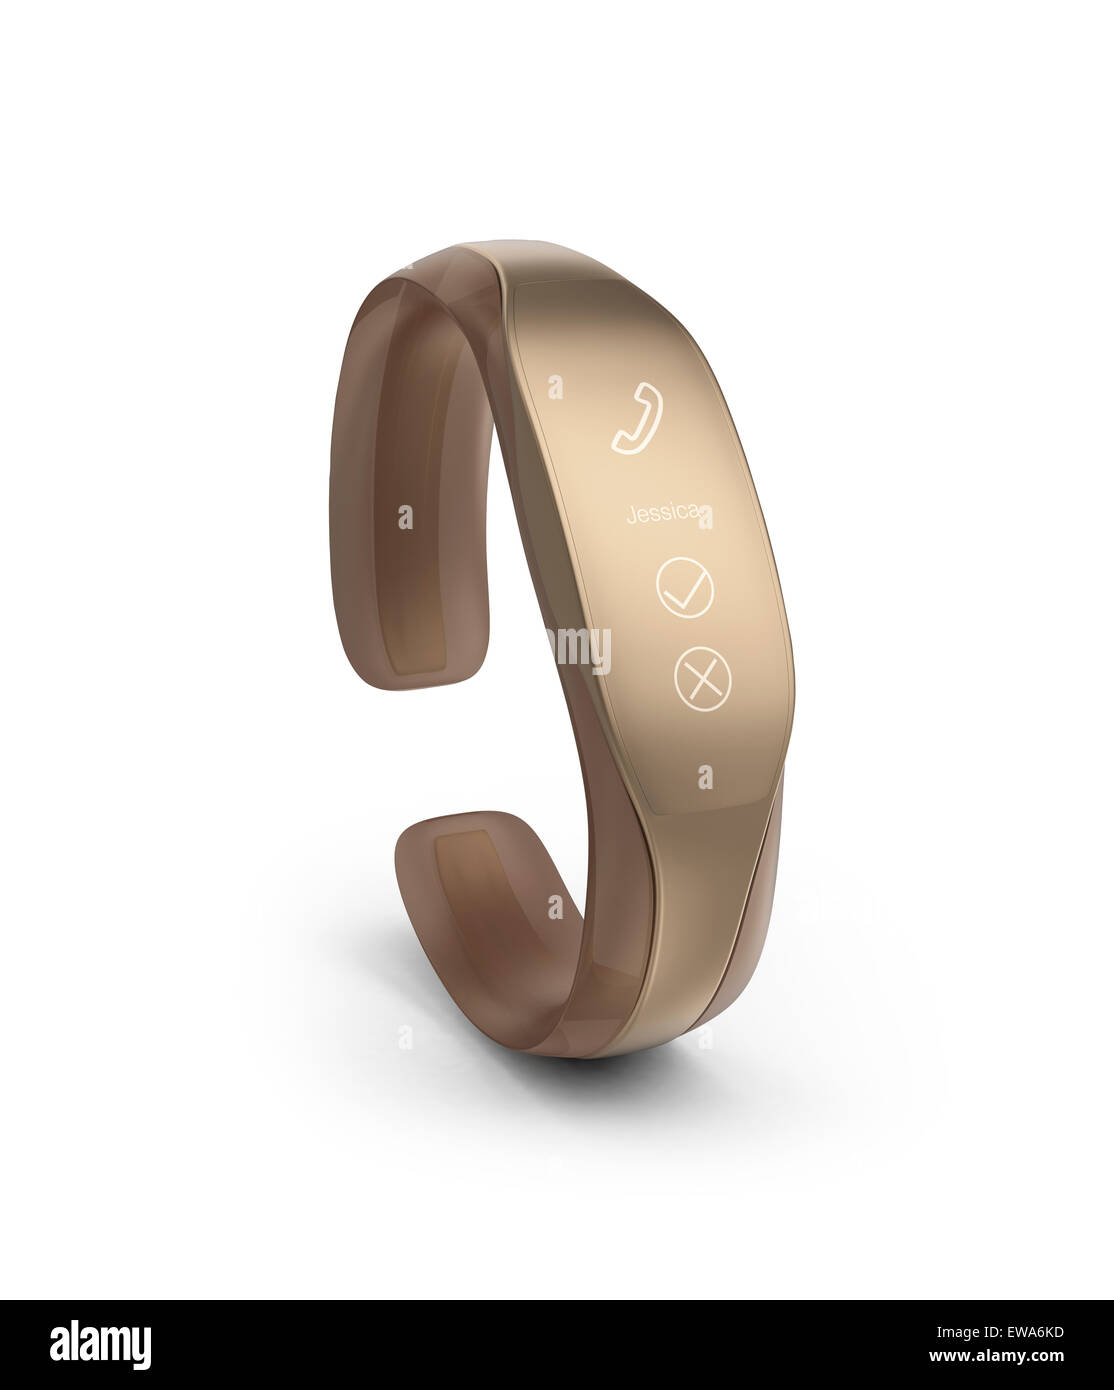 Smart élégant bracelet afficher notification d'appel entrant Photo Stock -  Alamy